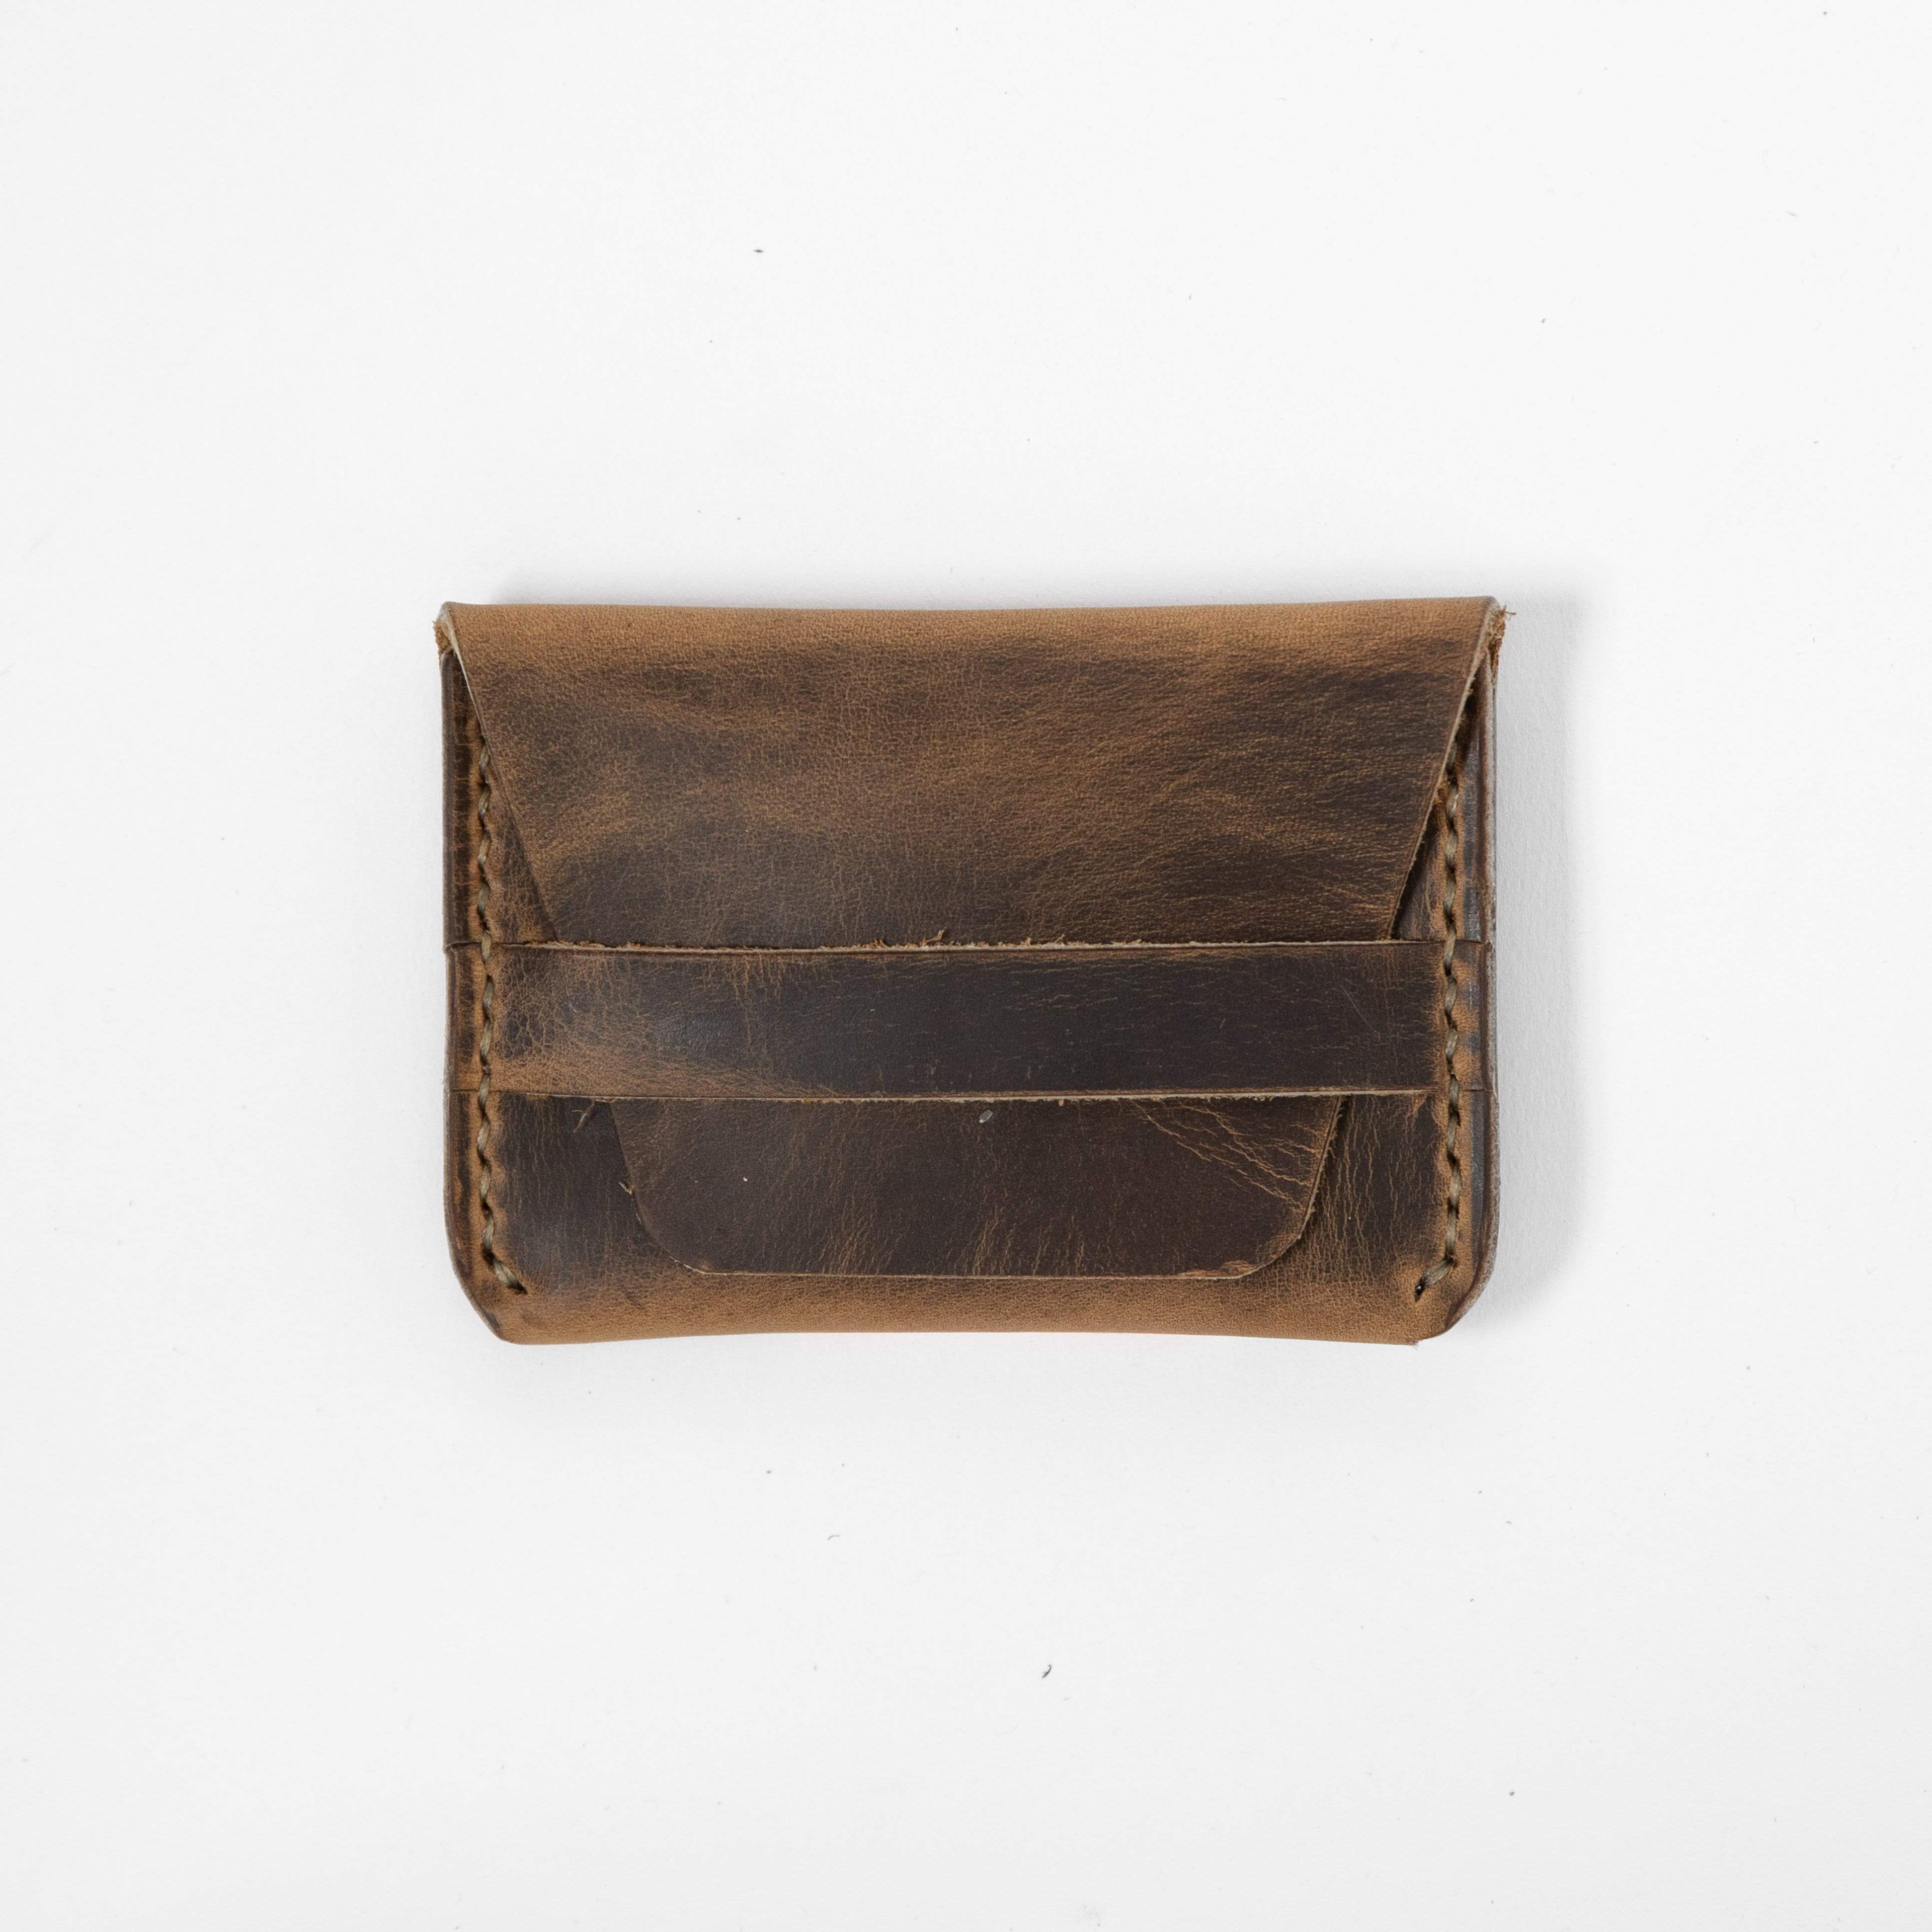 The Slim Wallet Vintage Brown